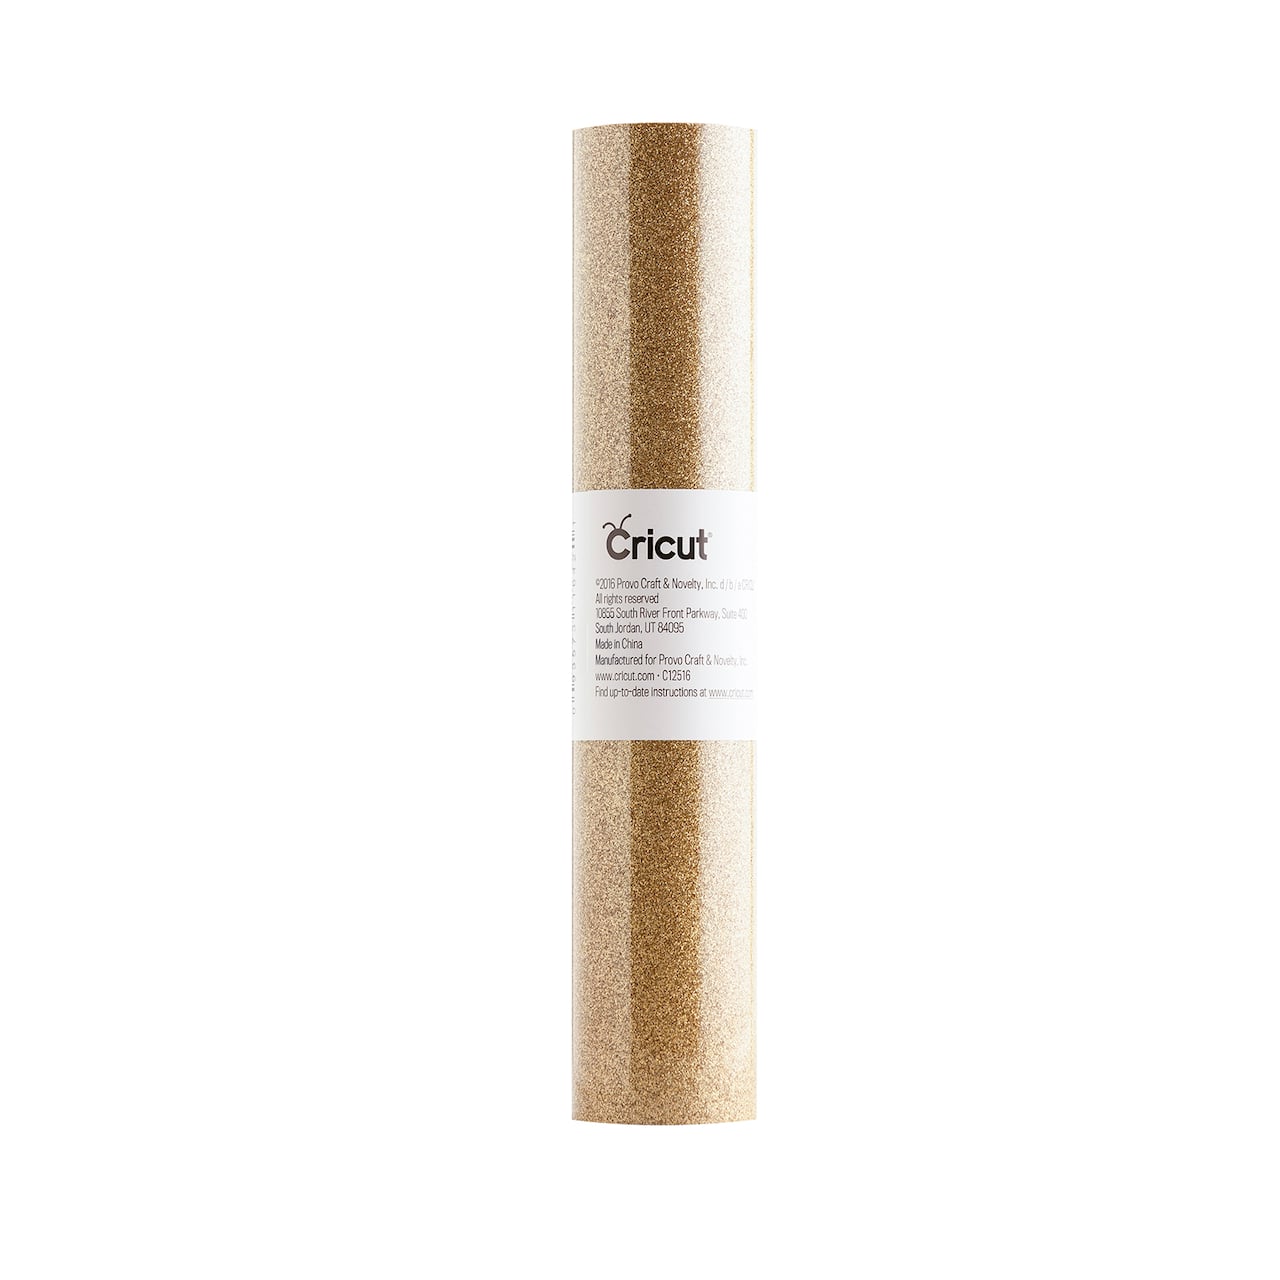 Cricut&#xAE; Glitter Iron-On Value Roll, Gold Dust